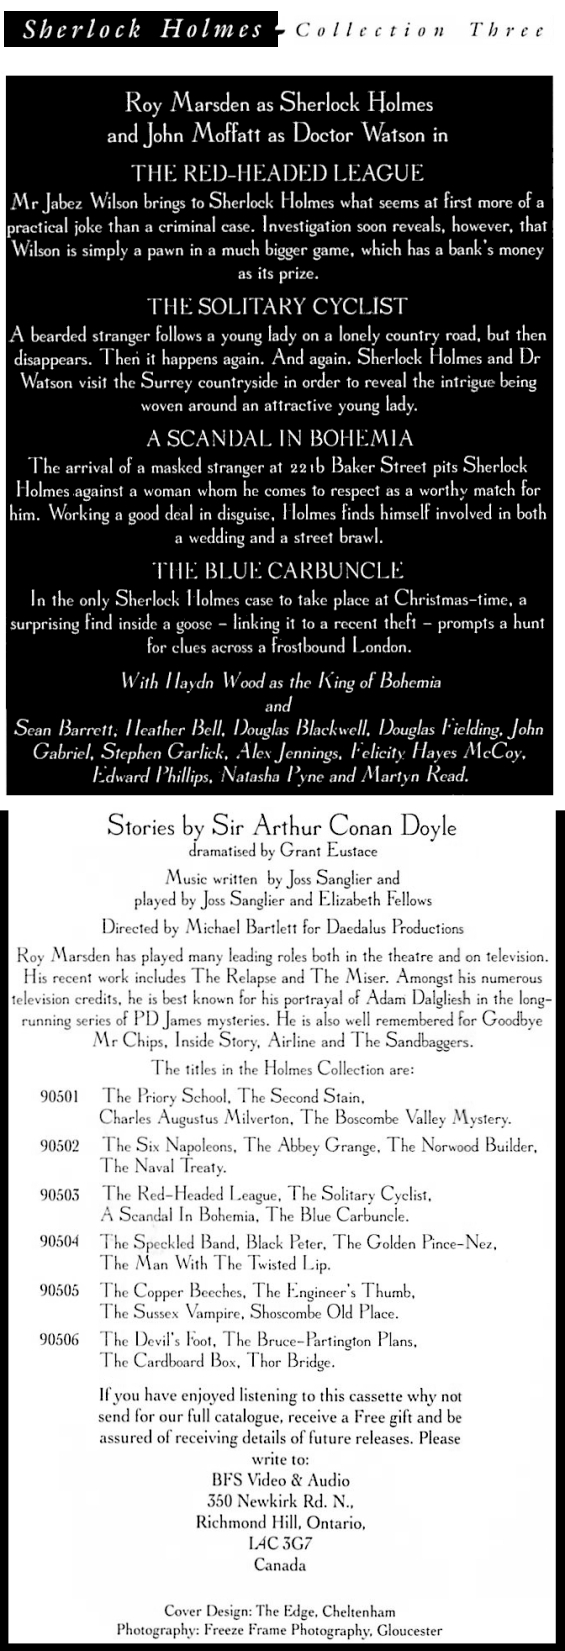 BFS Audio - Sherlock Holmes Collection Three - interior details